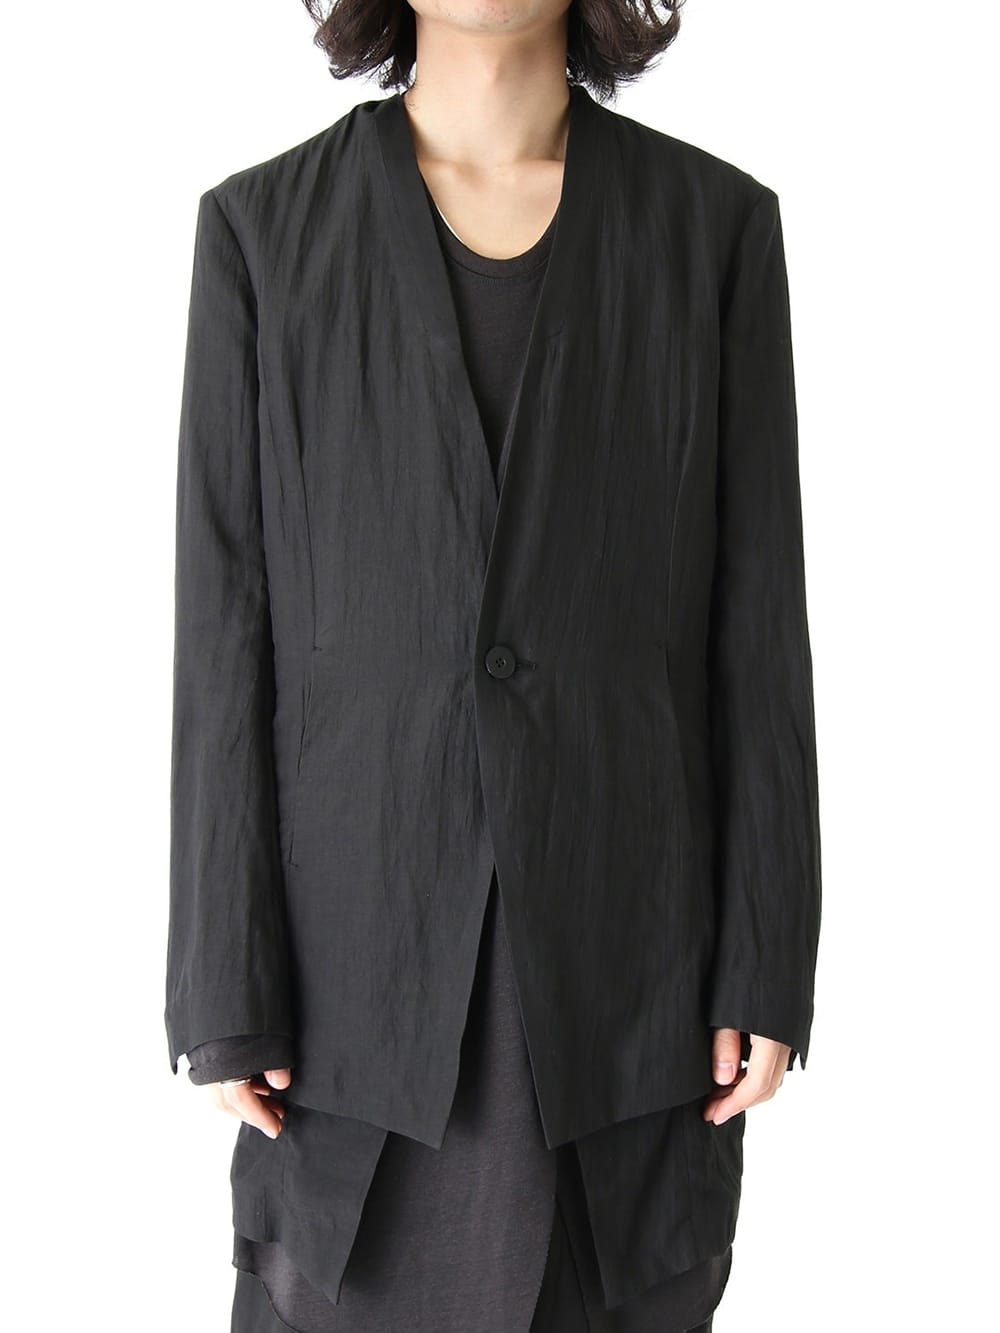 約44cmJULIUS 7 archives black tailored jacket - ジャケット・アウター